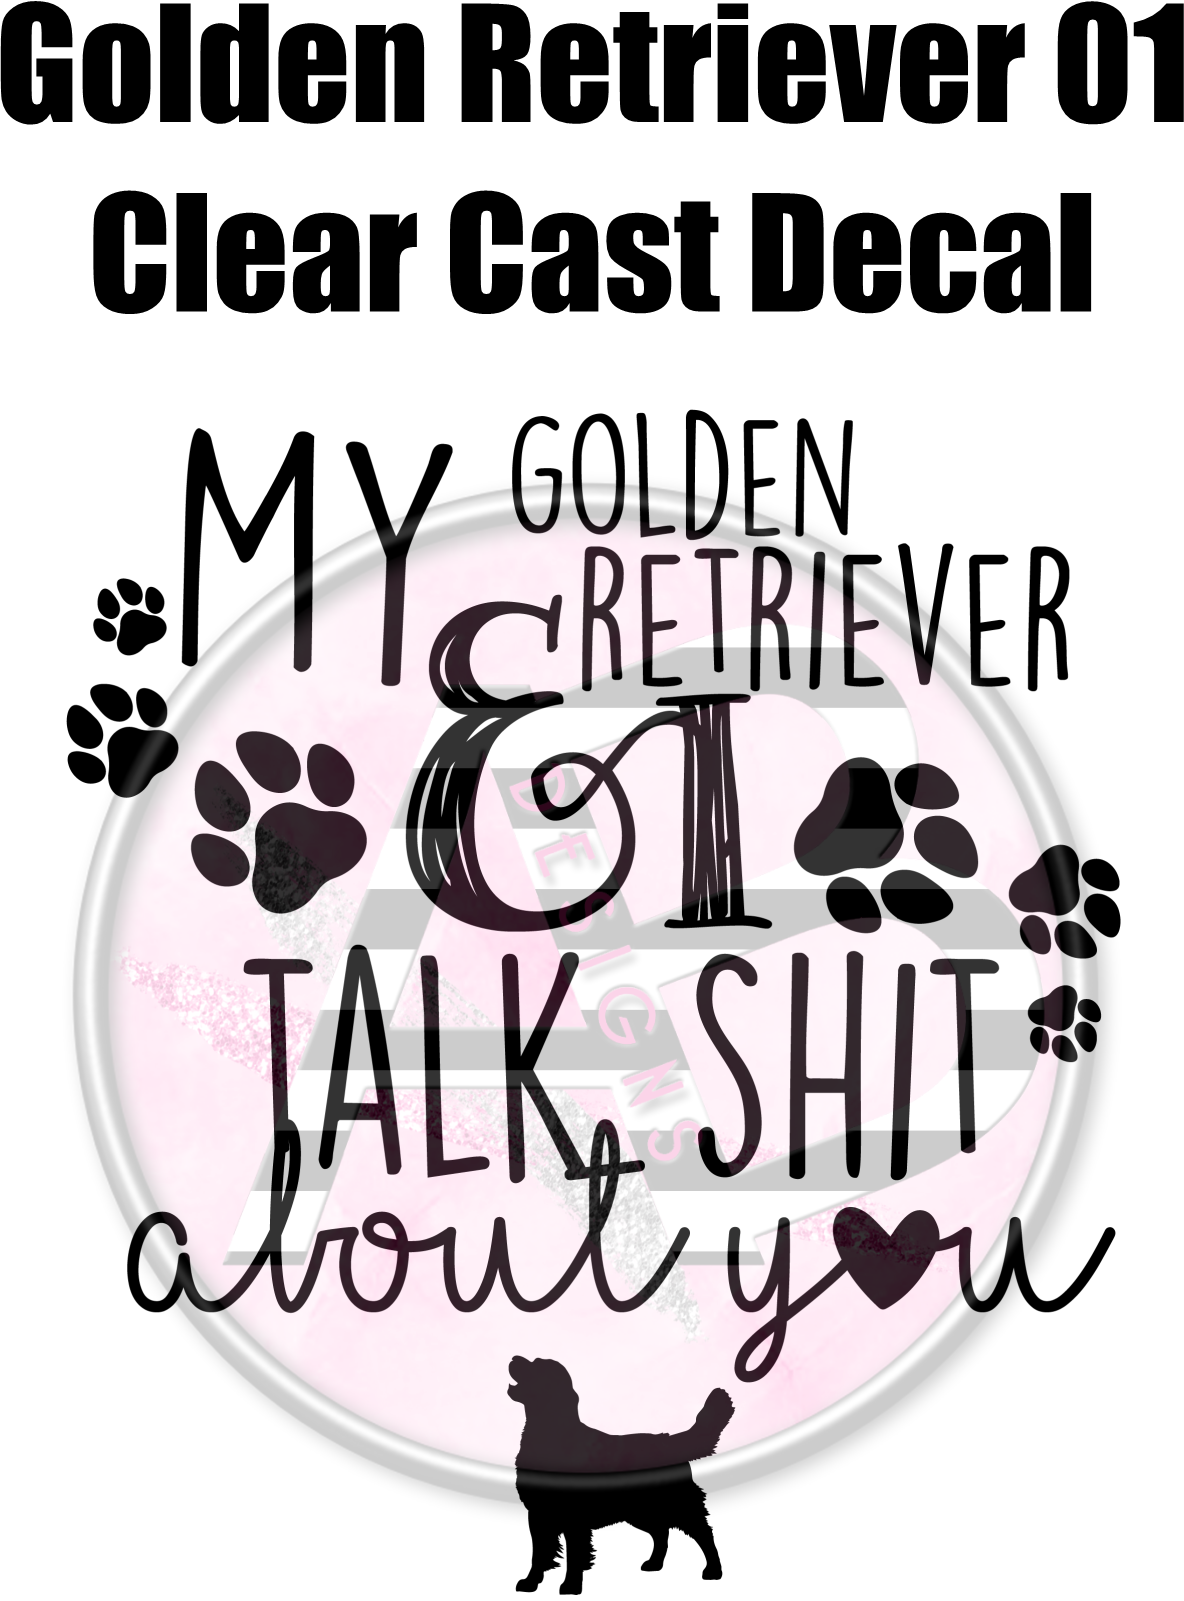 Golden Retriever 01 - Clear Cast Decal